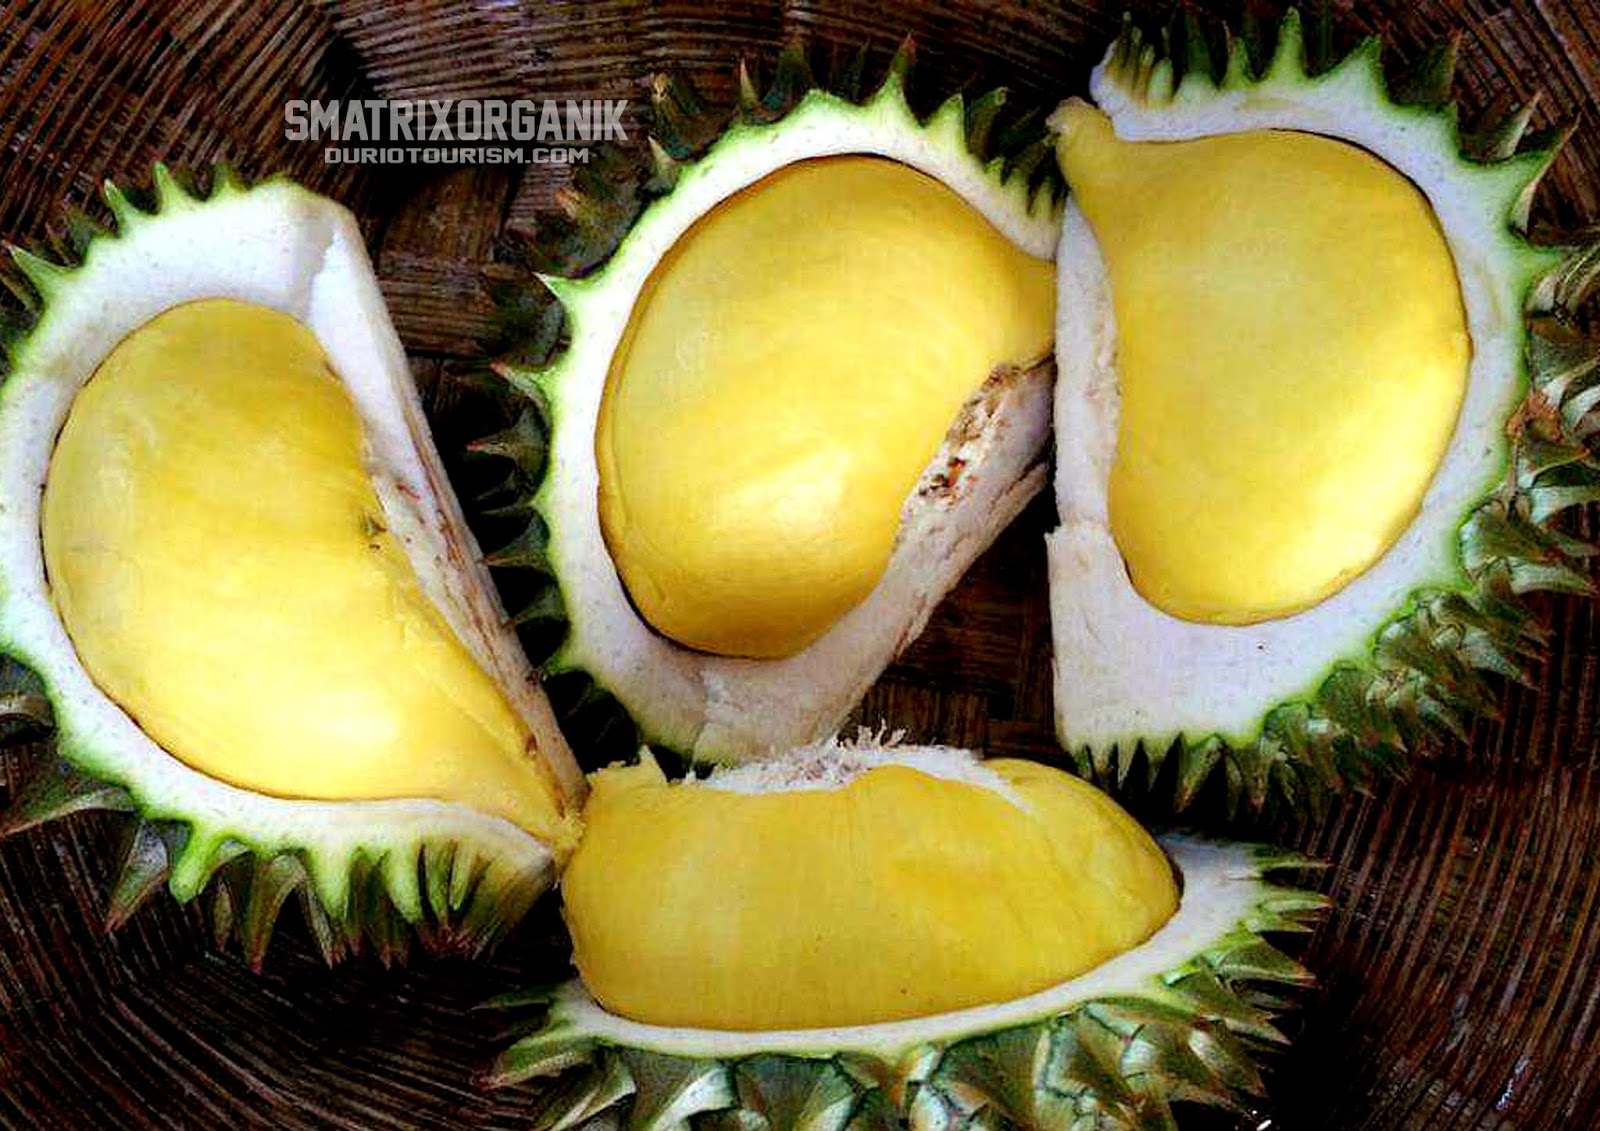  Thai  Durian Nockachip Nok Kracip DurioTourism 